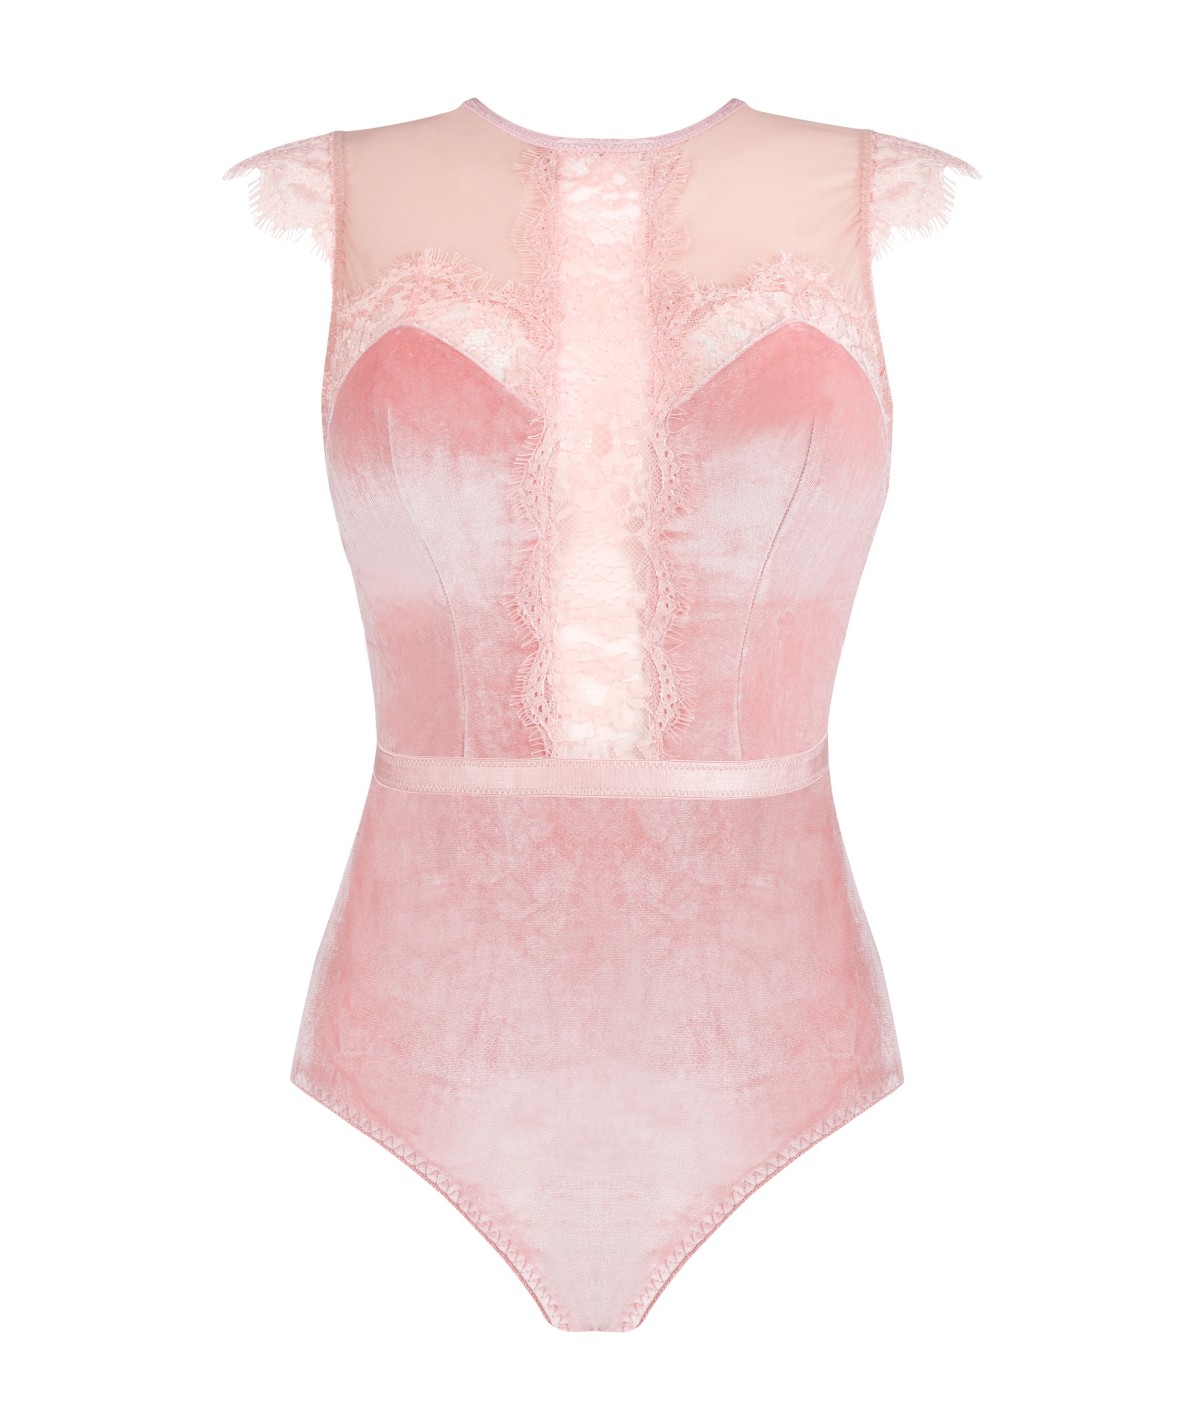 Body Jadore Intennse Pink Collection LivCo Corsetti Fashion